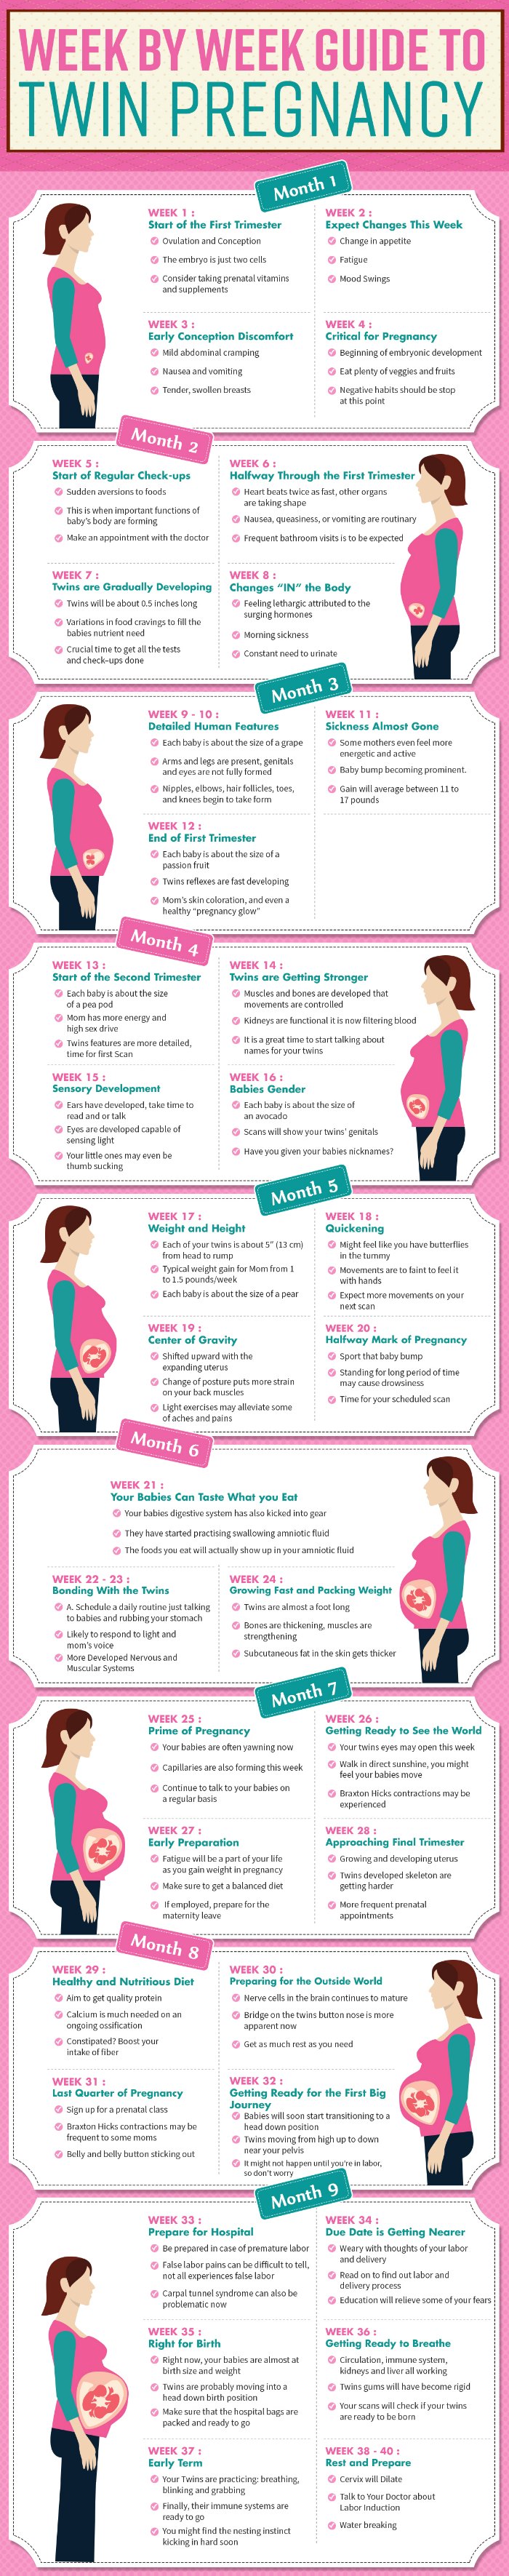 Week by Week Guide to Twin Pregnancy